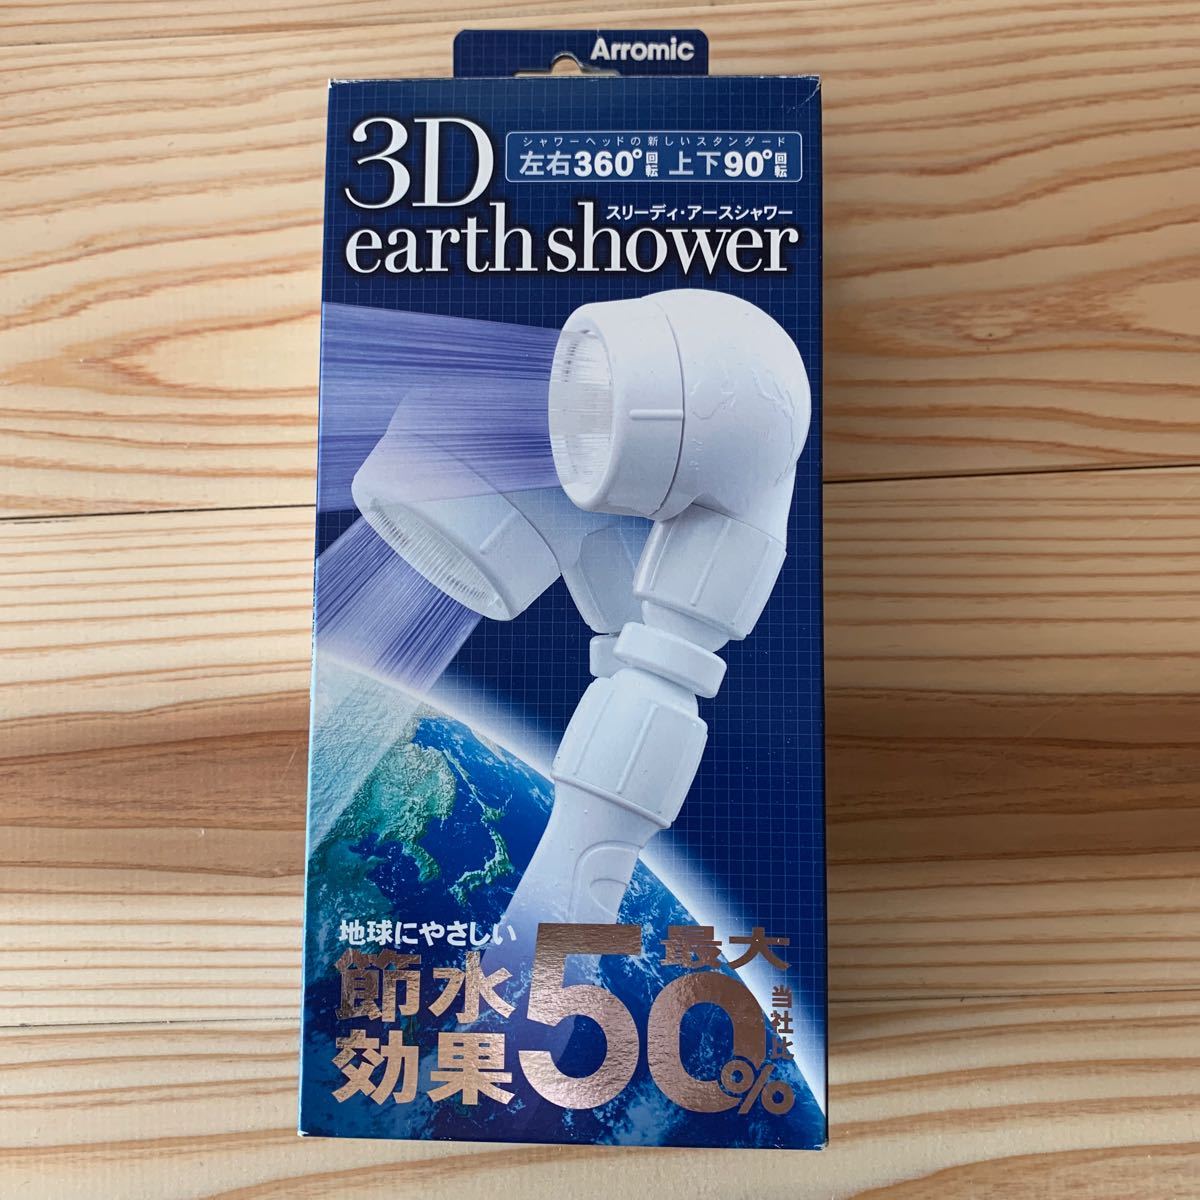 シャワーヘッド 3D earth shower 節水50% 3DE-24Nアースシャワー アラミック Arromic_画像1